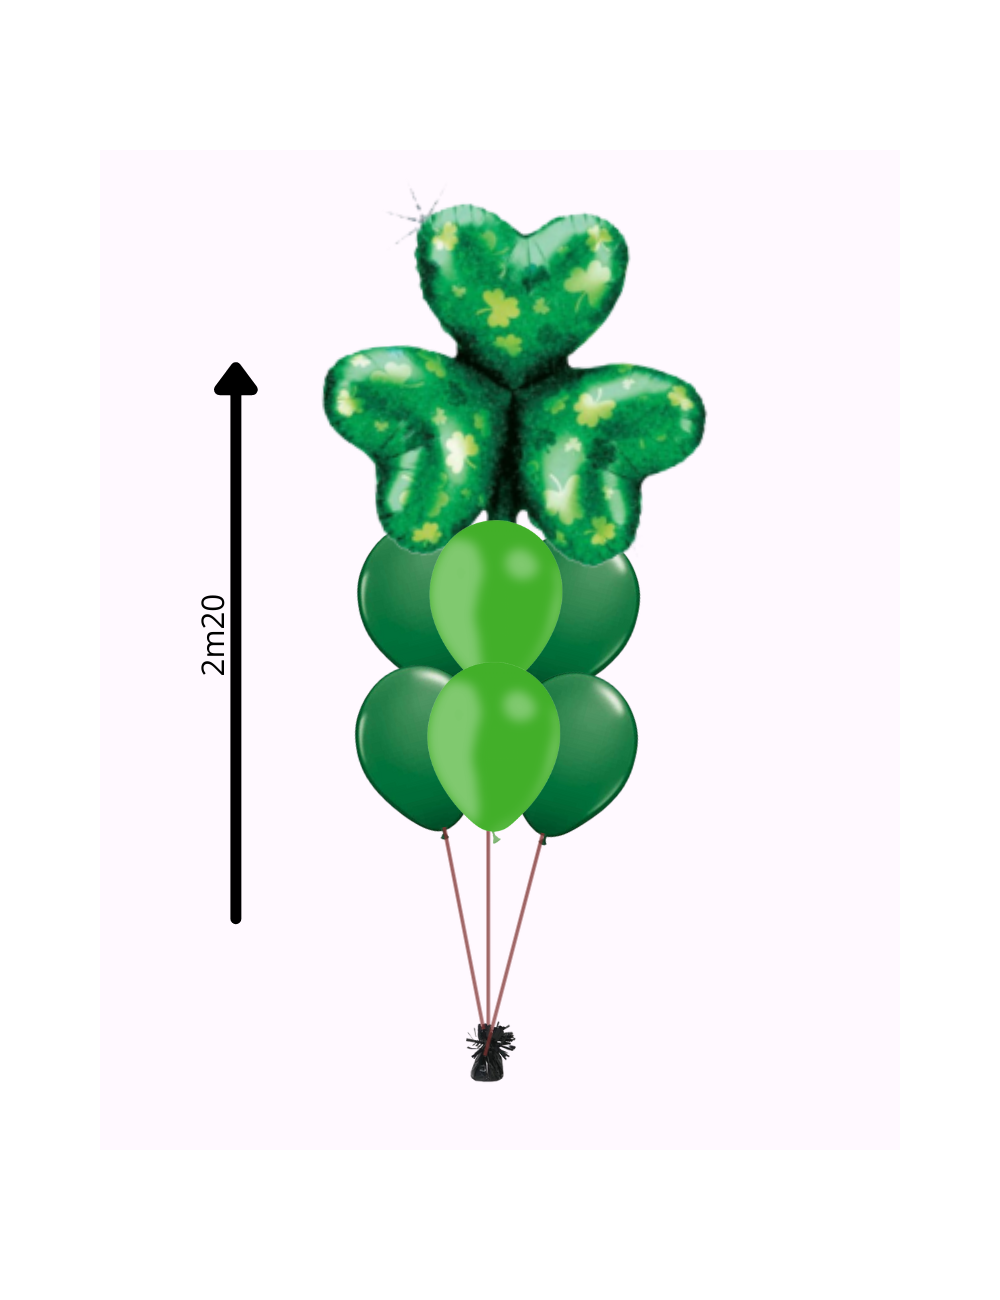 Ballon Latex 24 - Choisissez votre couleur